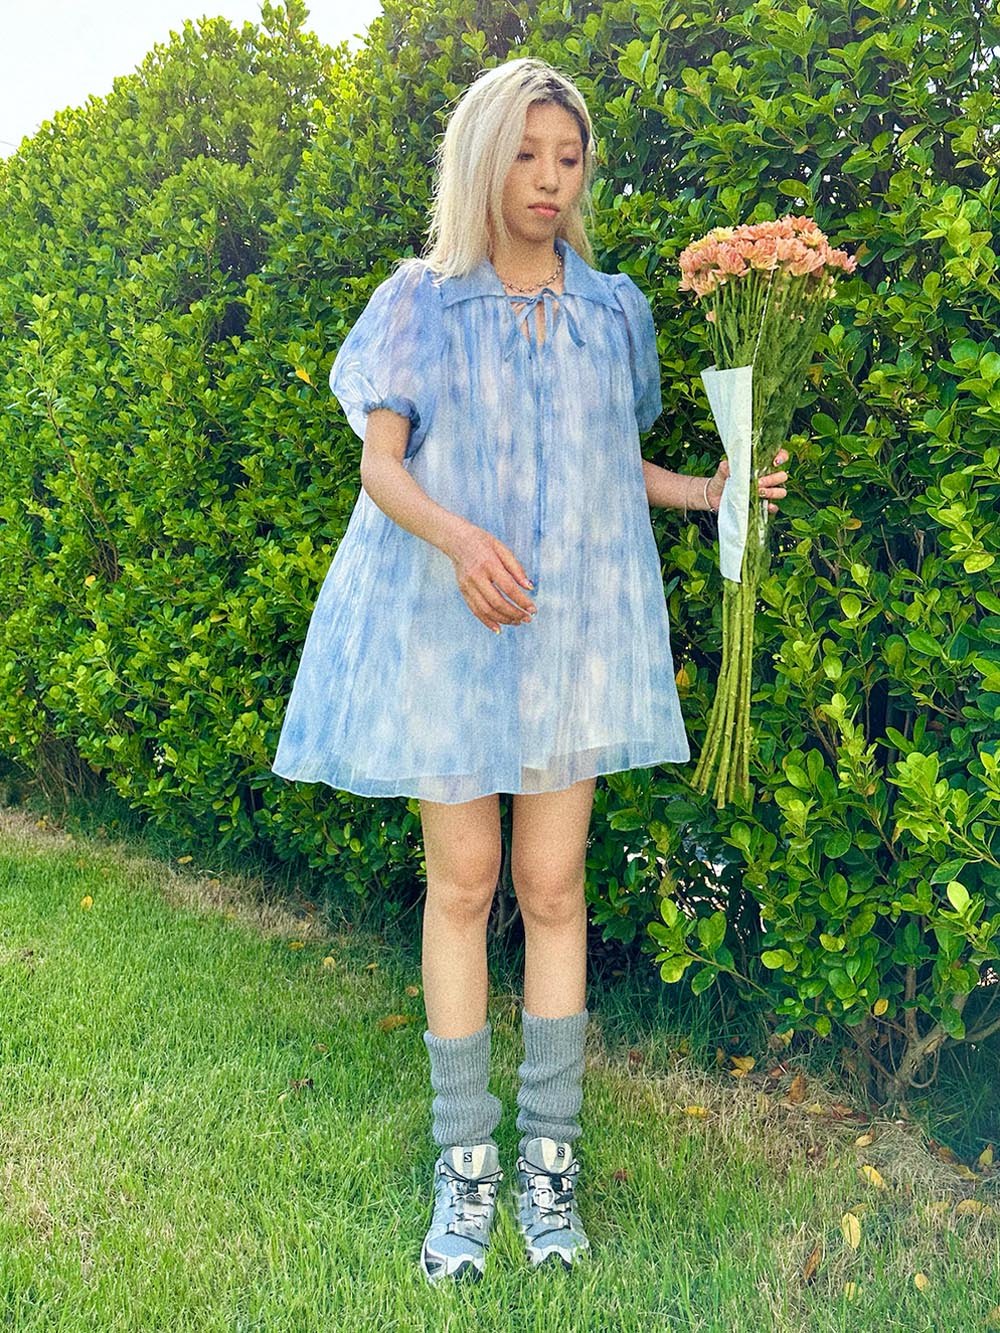 MUKTANK x TWOPLUMGIRLS Pleated Blue Organza Bubble Sleeve Summer Dress